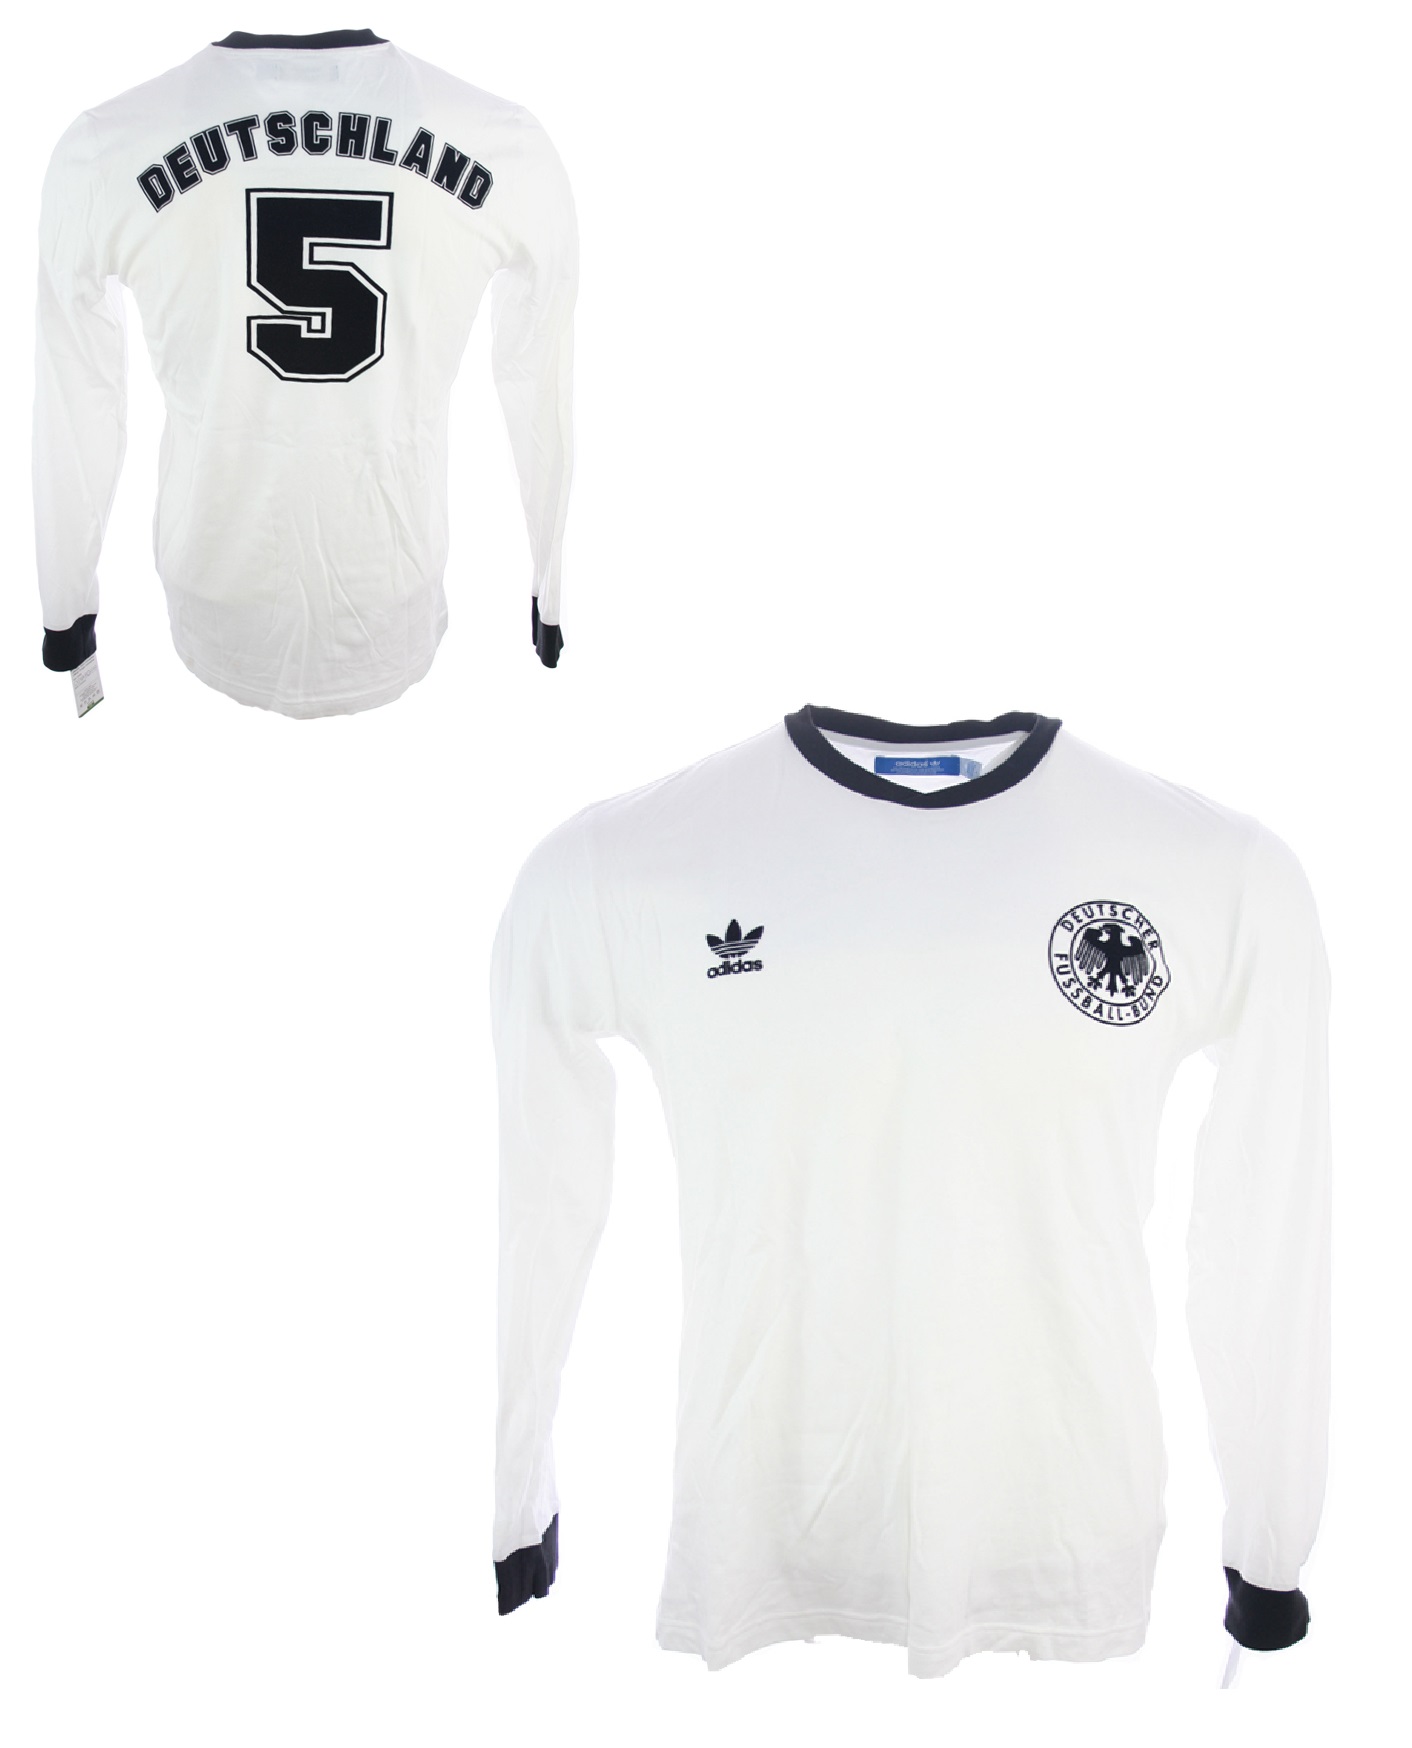 germany 1974 jersey